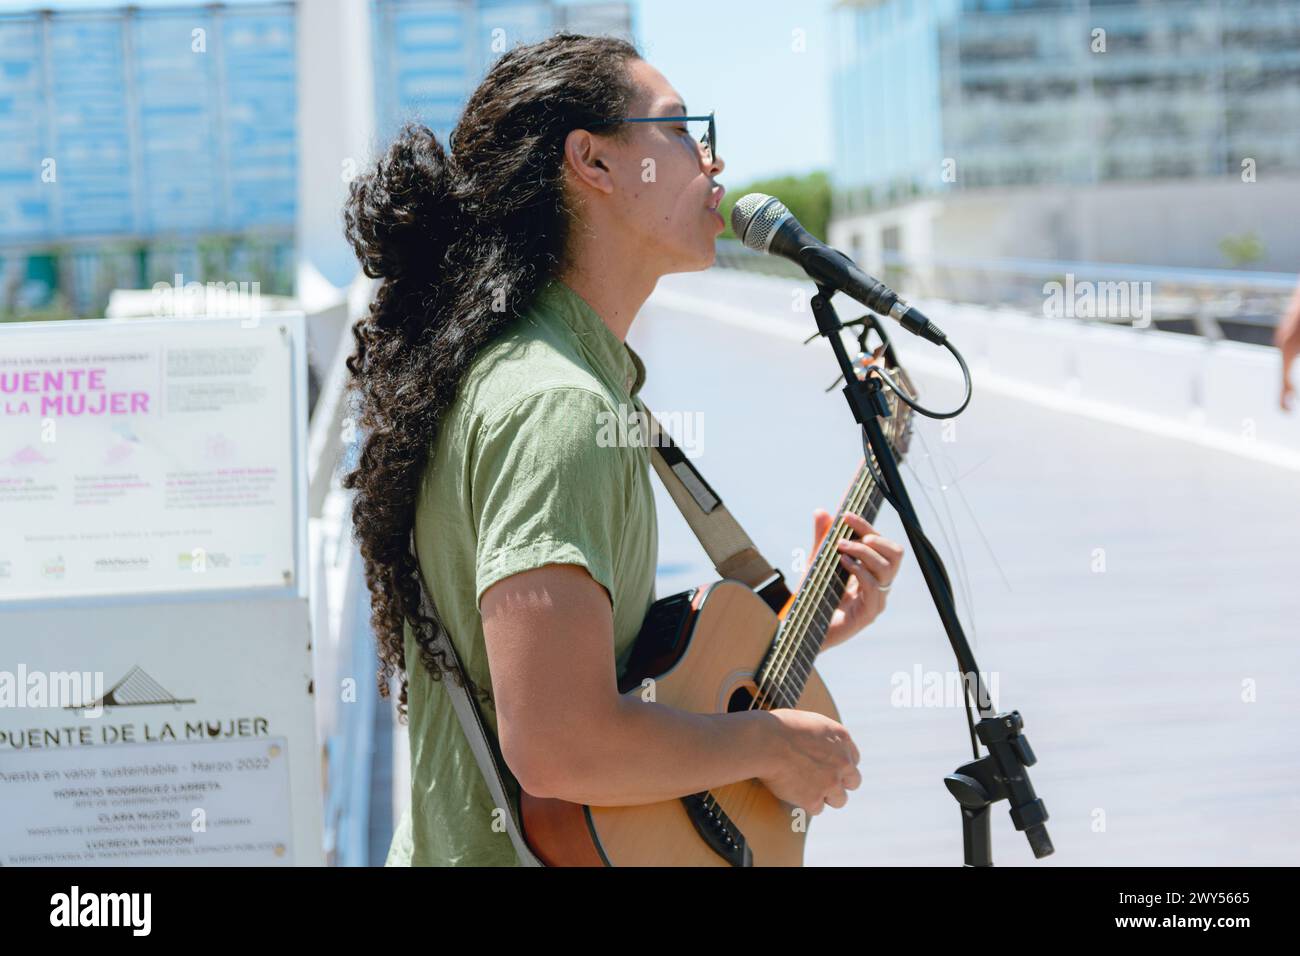 Vue de profil d'un jeune homme de busker avec de longs cheveux bouclés avec des lunettes de soleil, en Argentine jouant de la guitare et chantant travaillant à midi, espace de copie. Banque D'Images